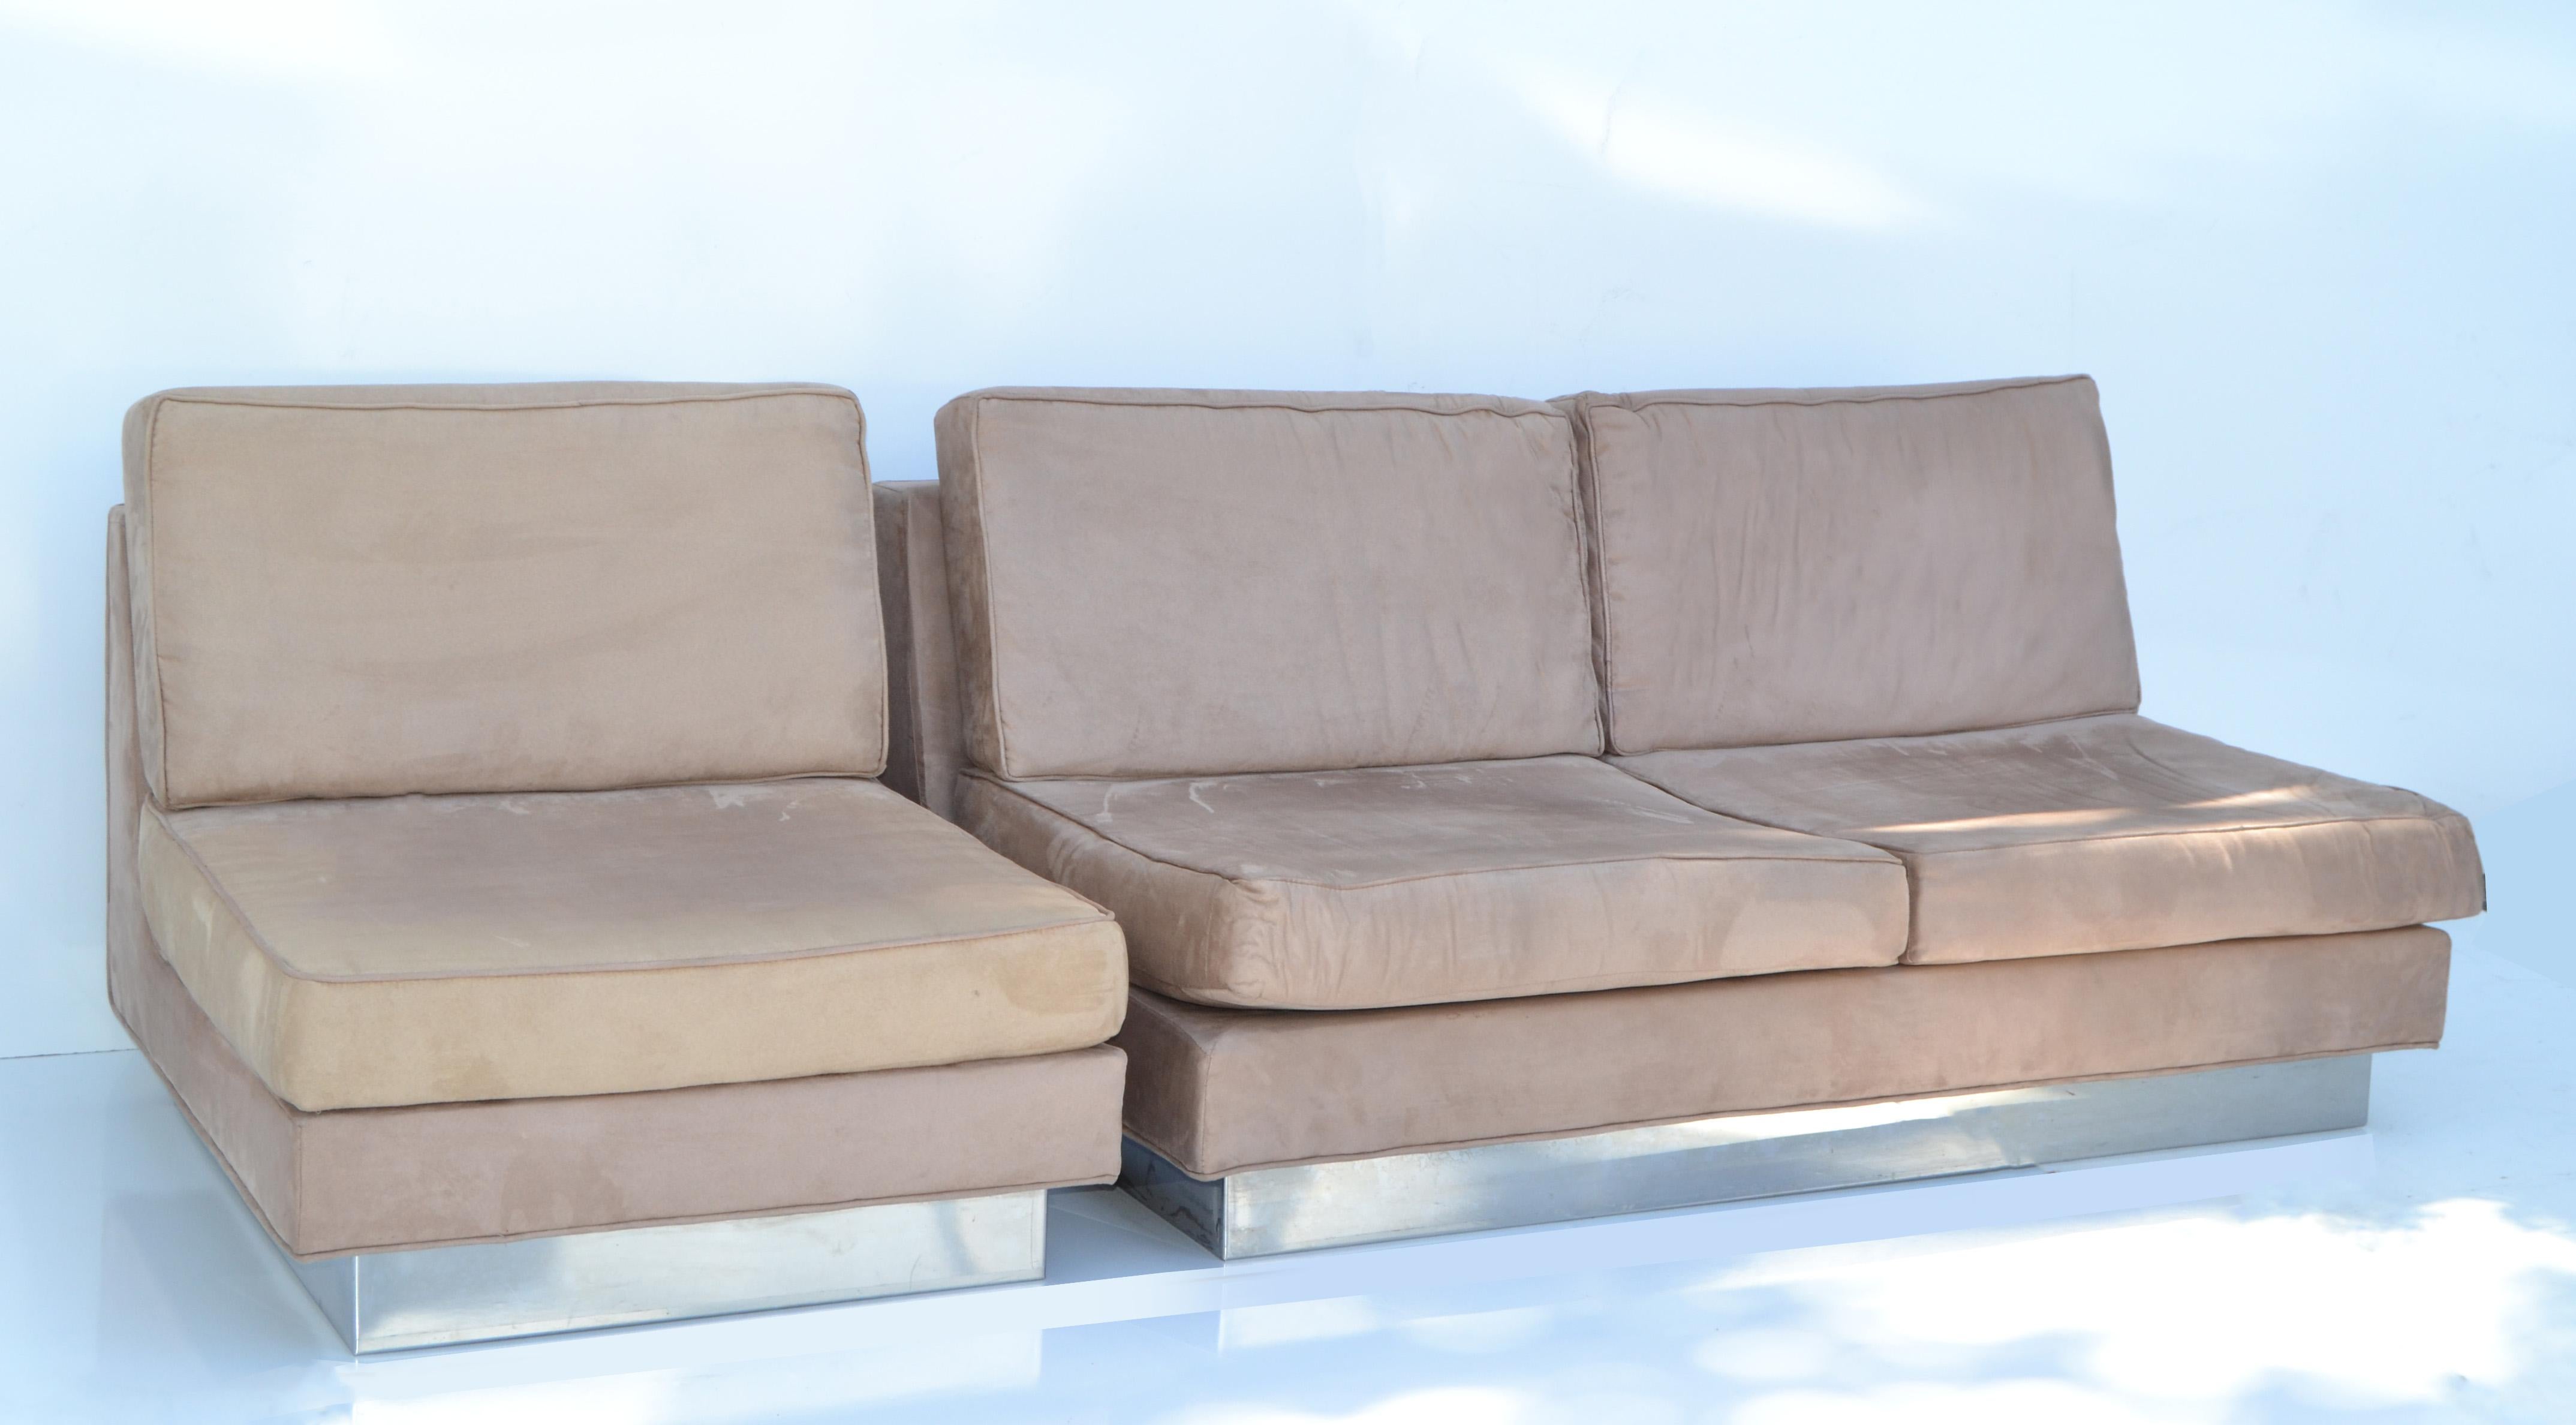 Französisches Mid-Century Modern-Sofa und passender Sessel von Jacques Charpentier.
Gepolstert in beigem Ultrasuede und mit einem verchromten Fuß.
Der Entwurf des Sofas wurde in der Ausgabe April 1971 von 